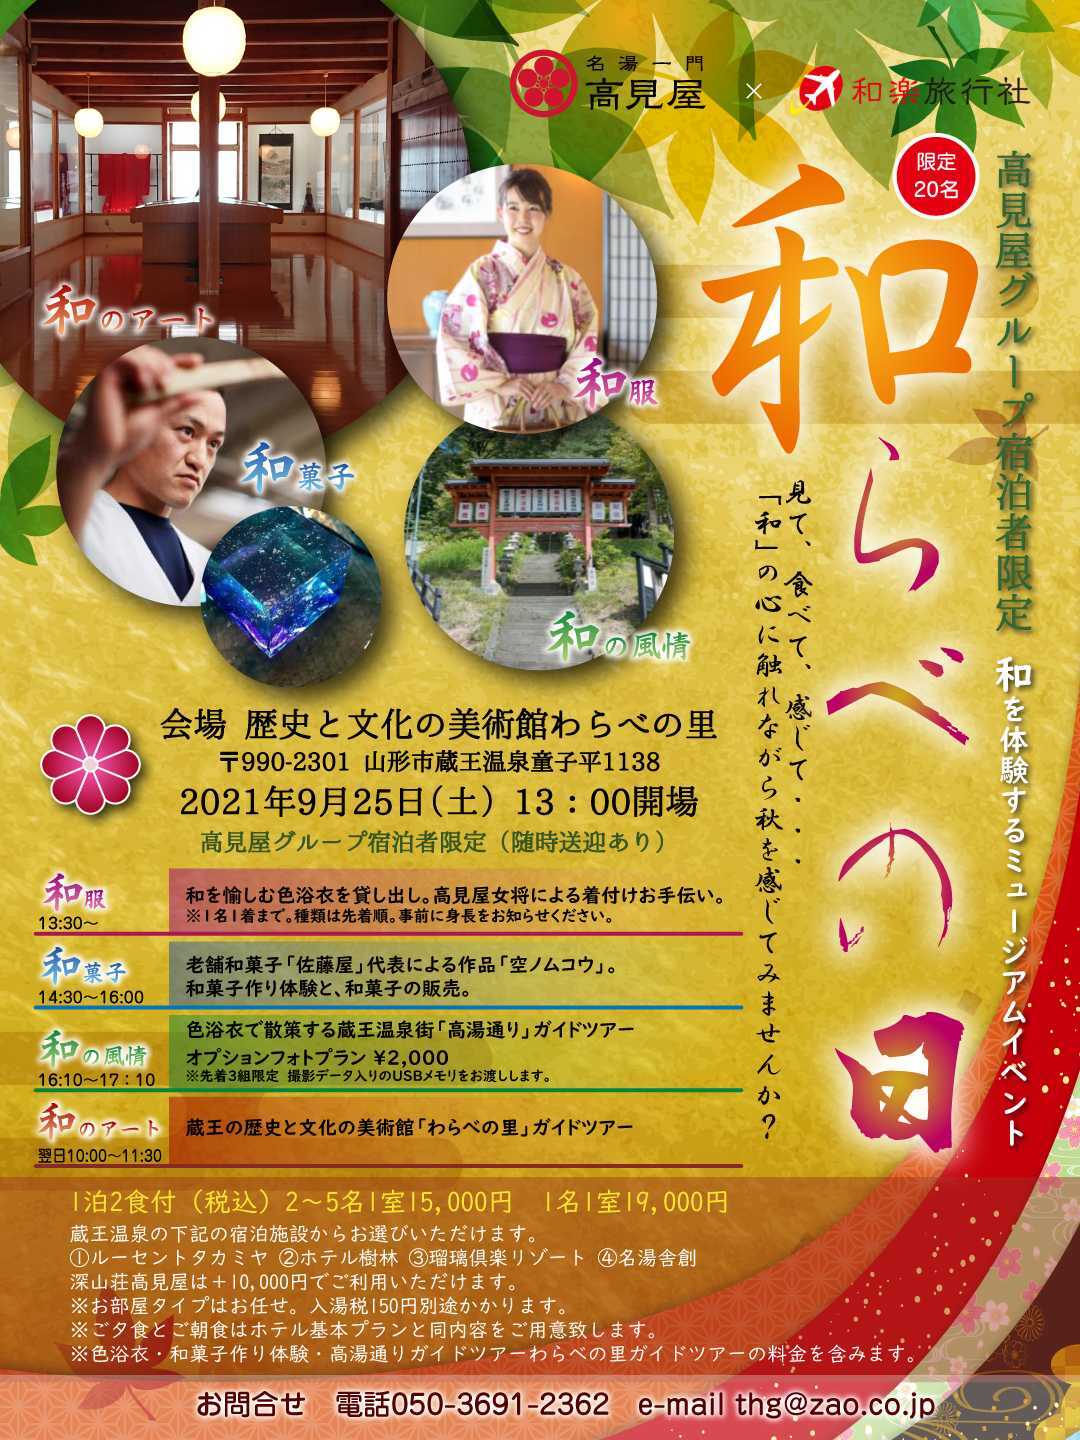 ～蔵王温泉で開催❗和を体感するミュージアムイベント「和らべの日」✨～